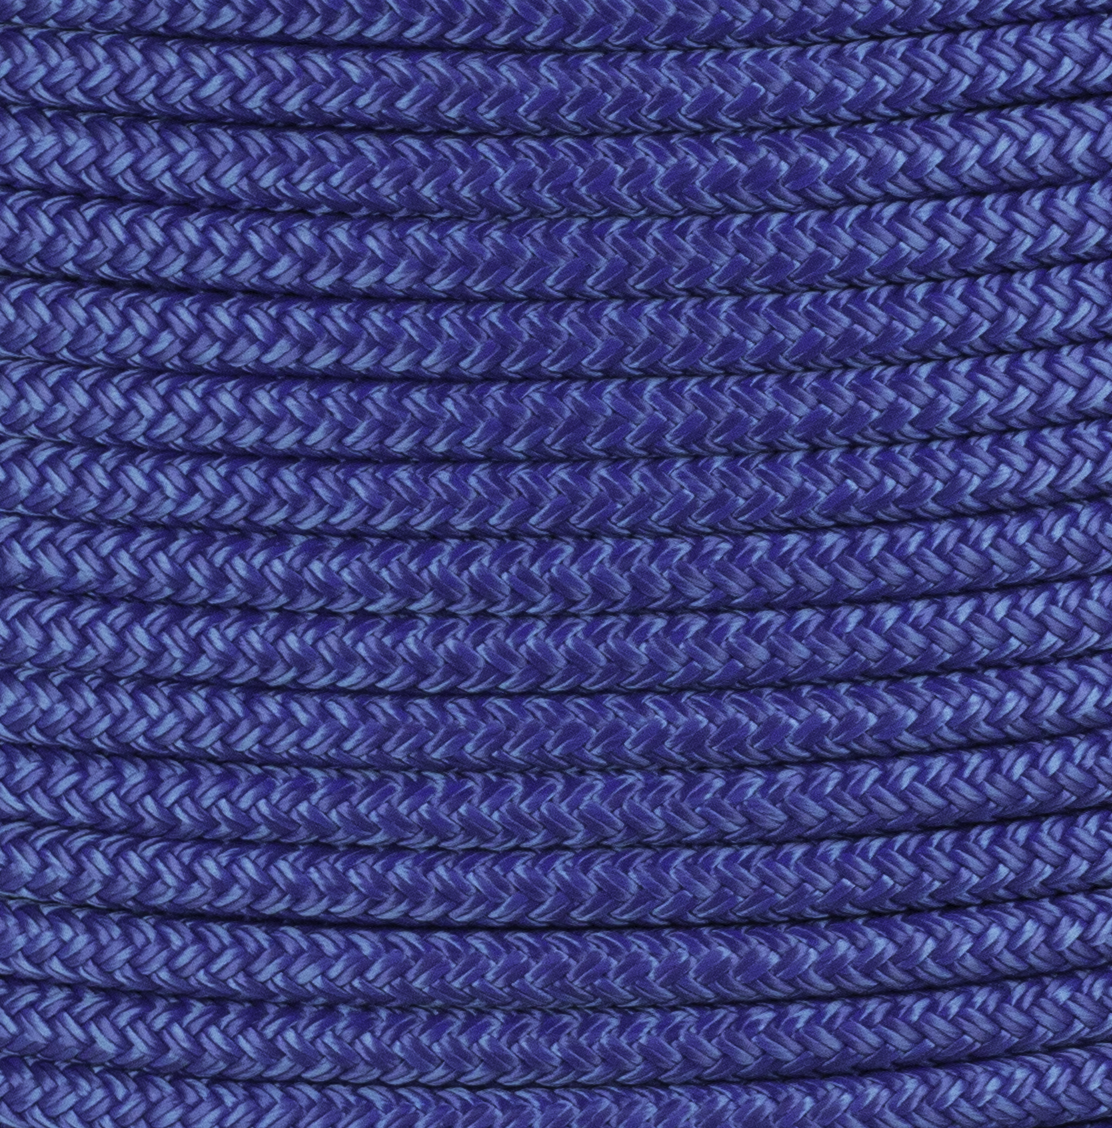 nylon rope texture